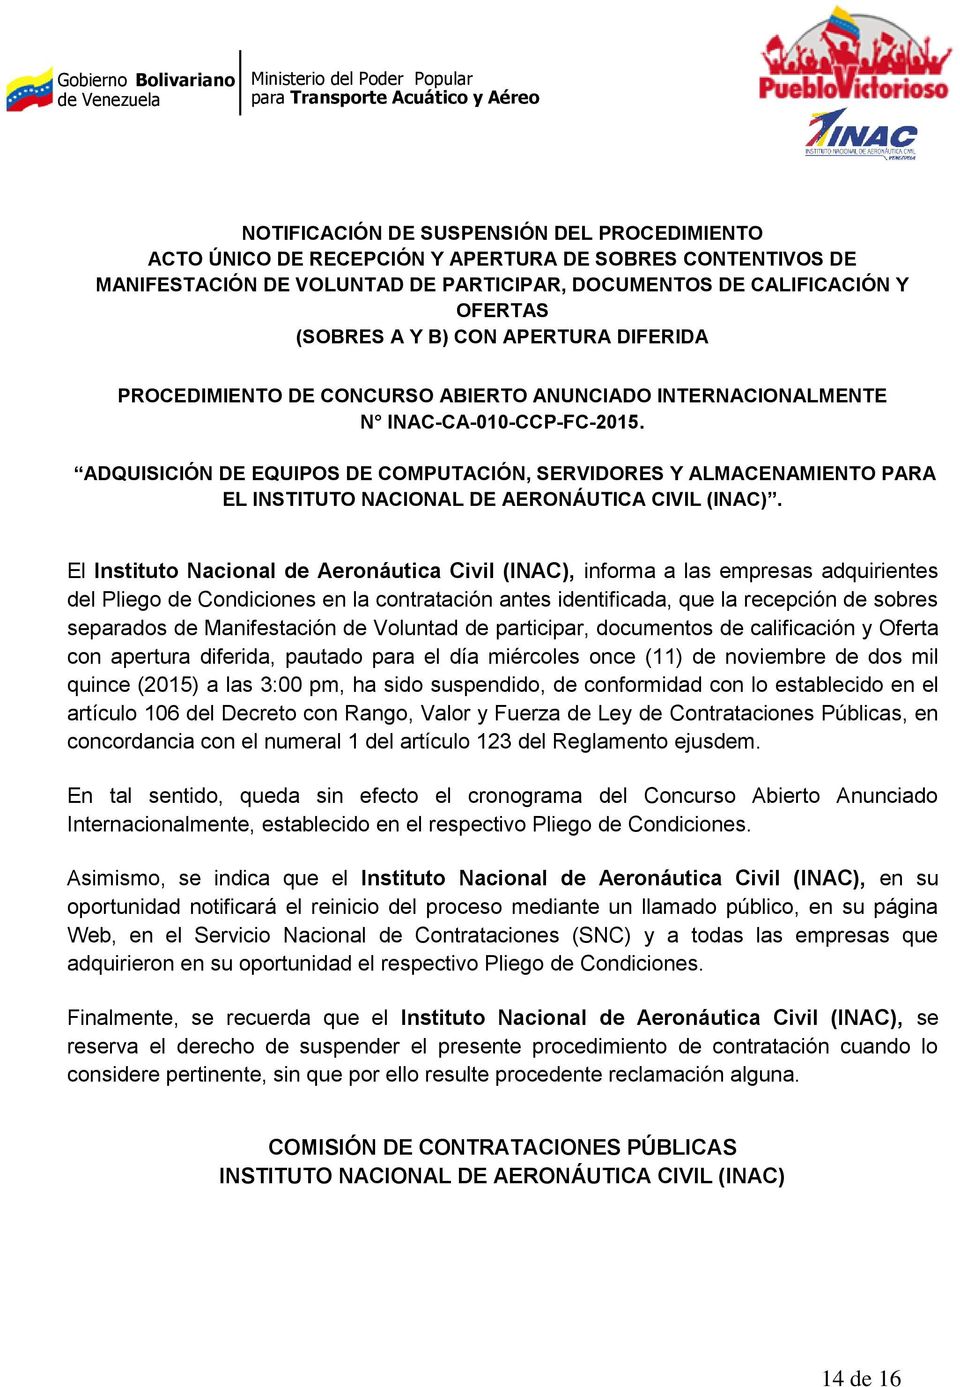 ADQUISICIÓN DE EQUIPOS DE COMPUTACIÓN, SERVIDORES Y ALMACENAMIENTO PARA EL INSTITUTO NACIONAL DE AERONÁUTICA CIVIL (INAC).